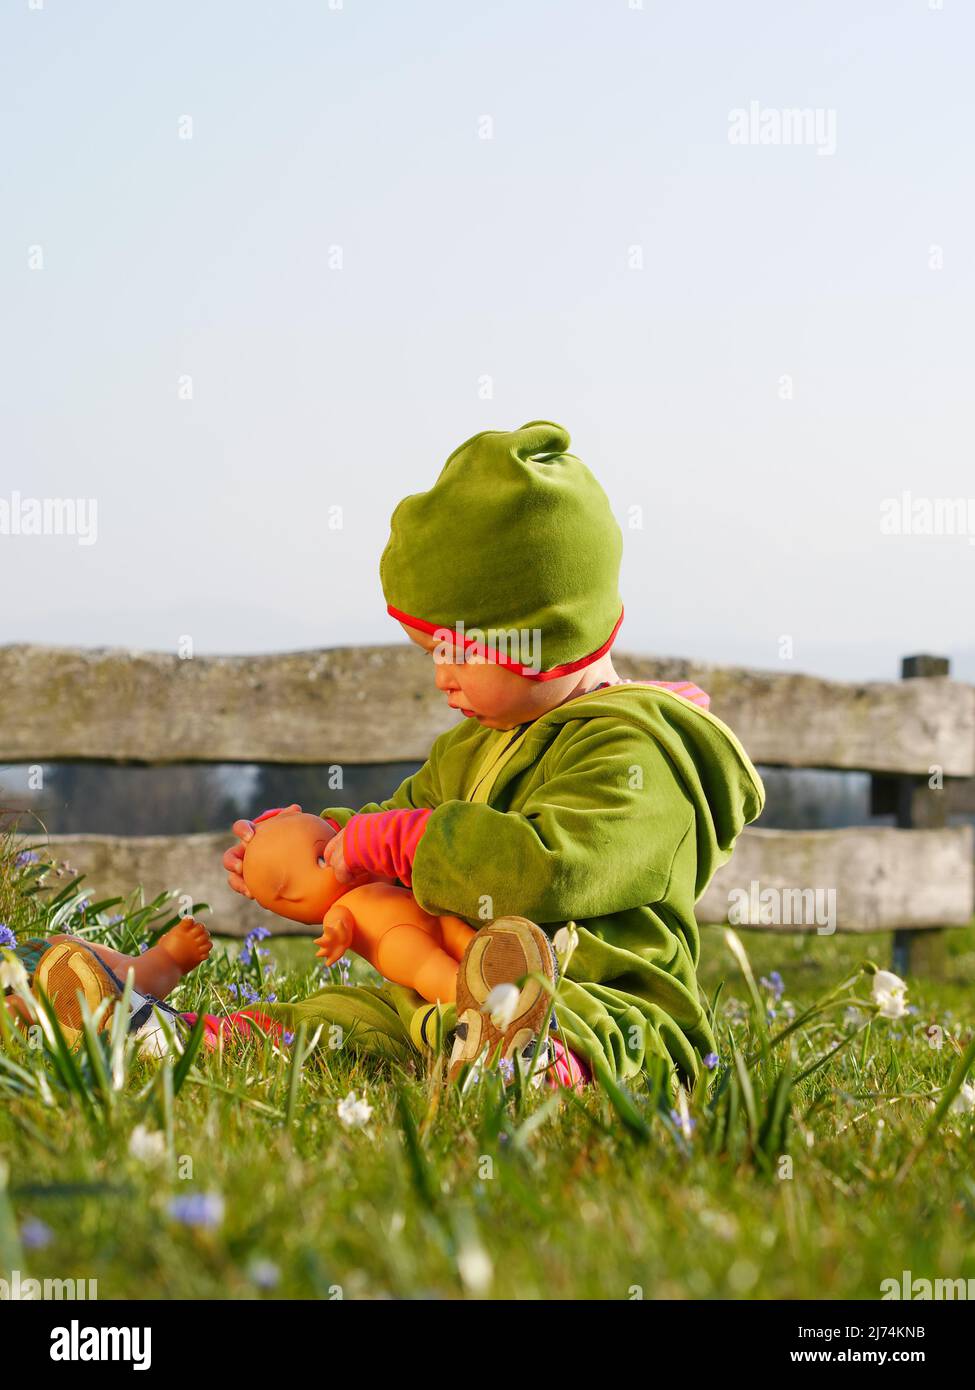 Mädchen sitzt im Gras und spielt mit Puppe Stock Photo